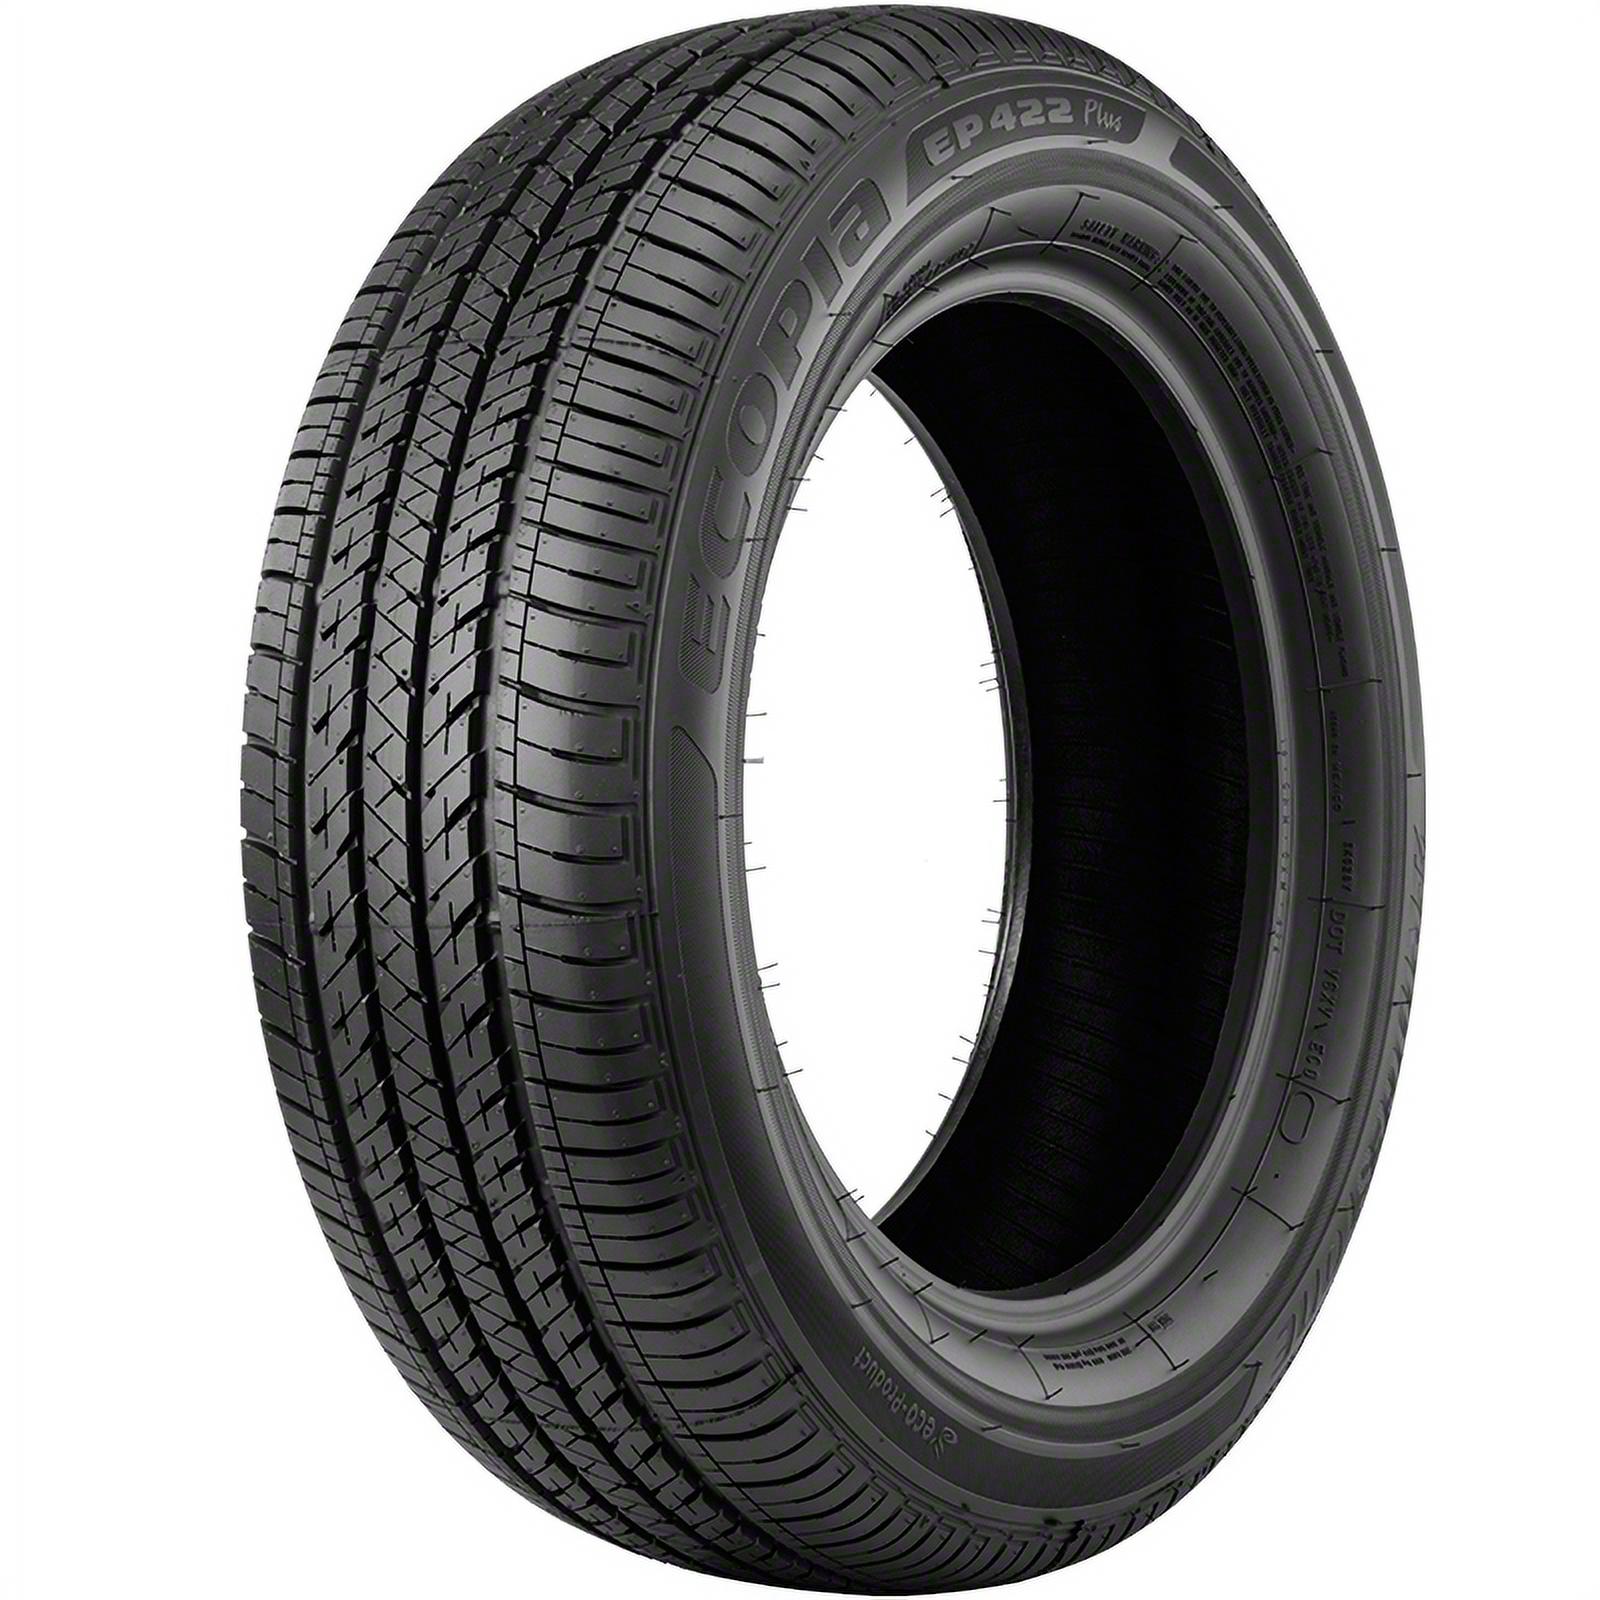 Bridgestone Ecopia EP422 Plus 195/65R15 91 H Tire